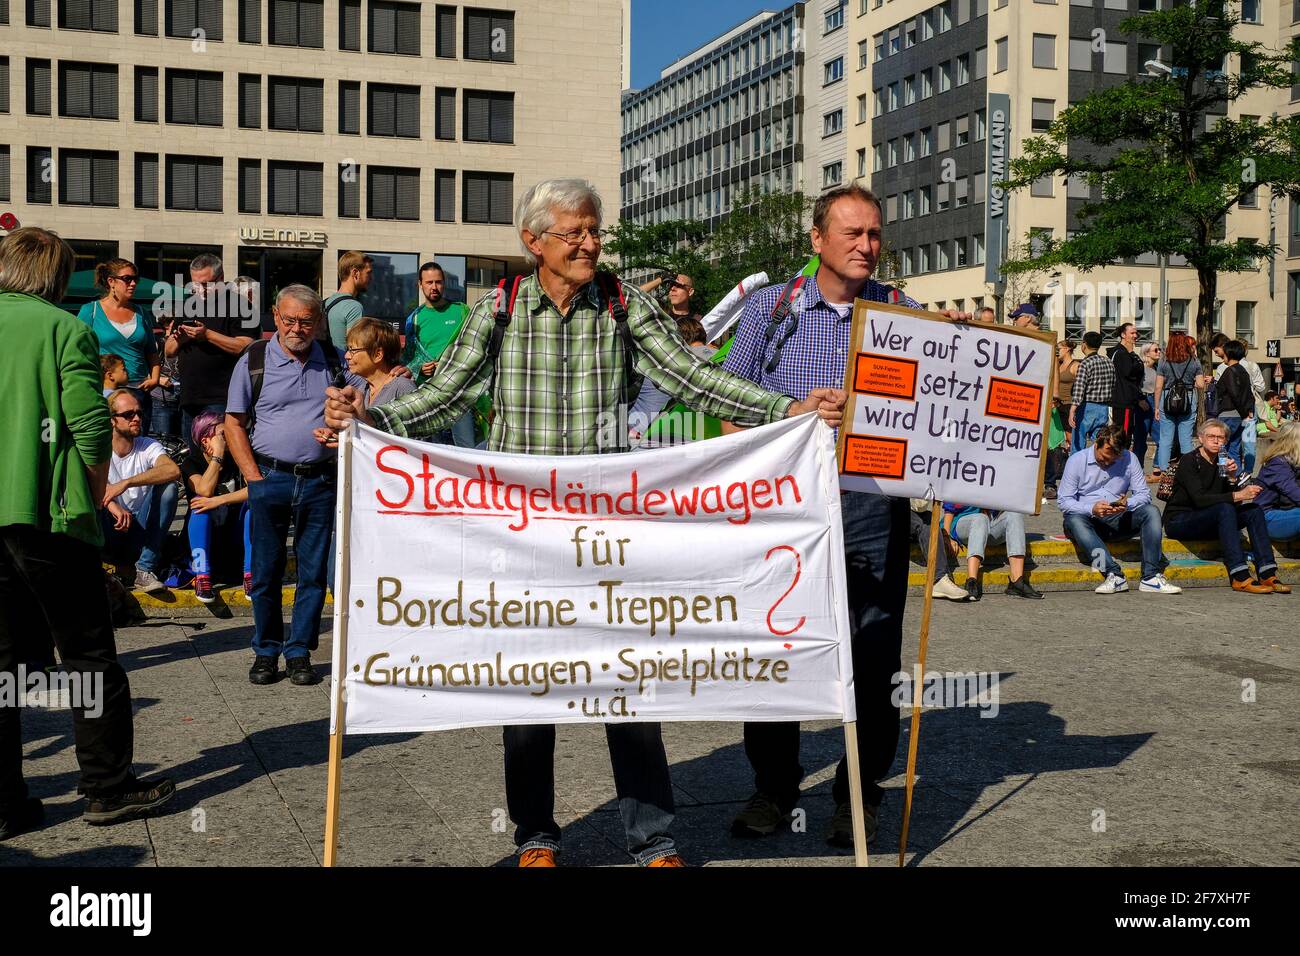 14.09.2019, Frankfurt am Main, Hessen, Deutschland - auf dem Platz an der Hauptwache in Frankfurt sammeln sich Demonstranten und Vertreter verschie Stockfoto